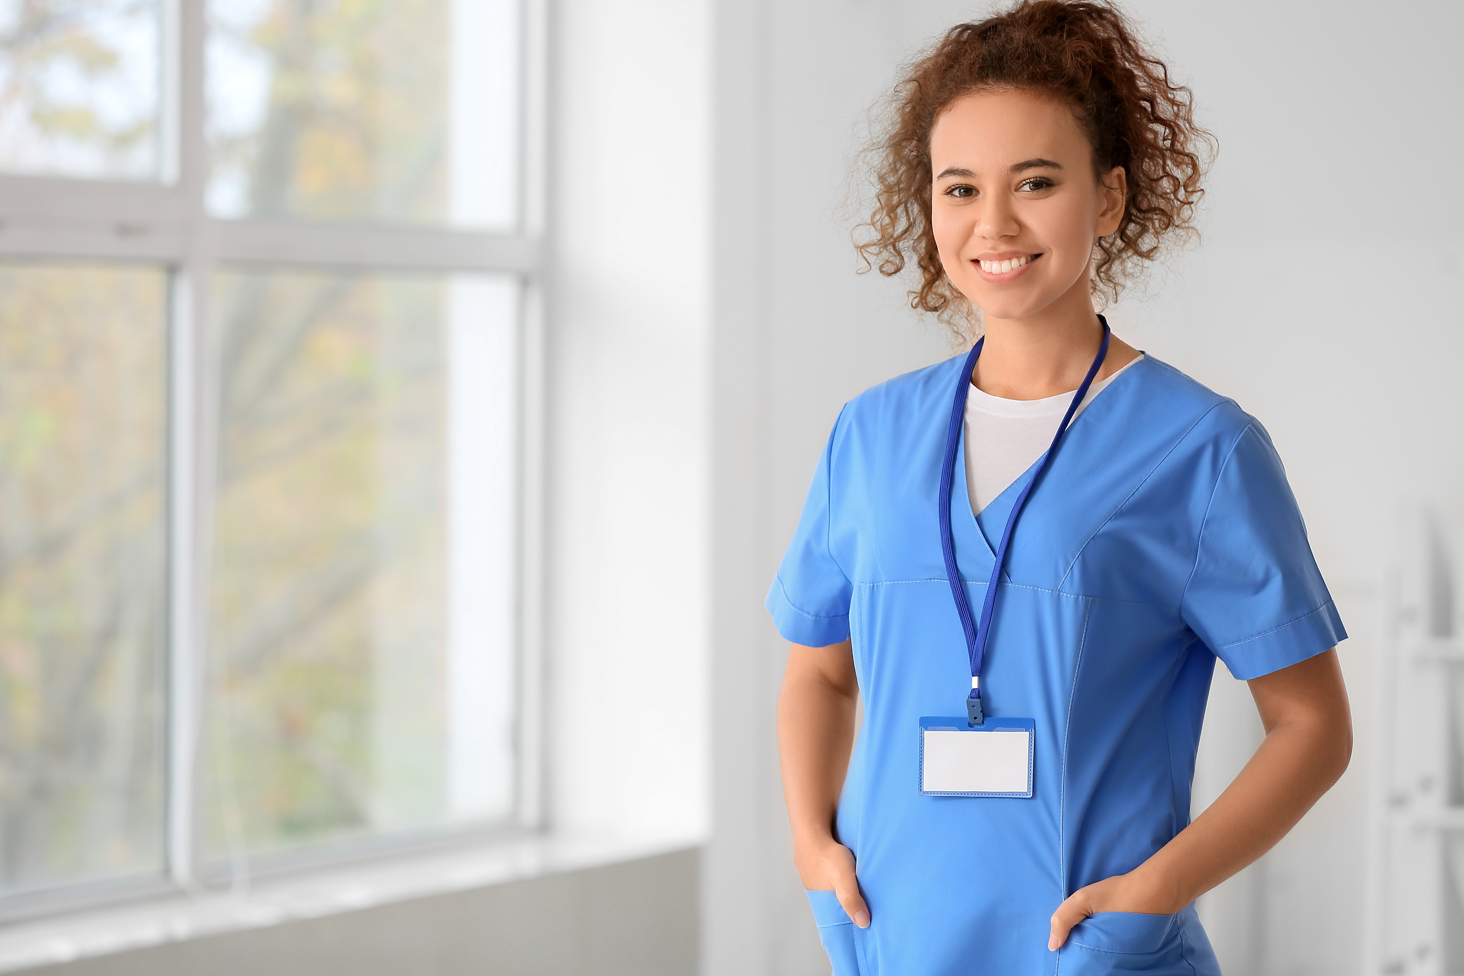 Nursing Assistant, Nursing Assistant Career, Nursing Assistant Program